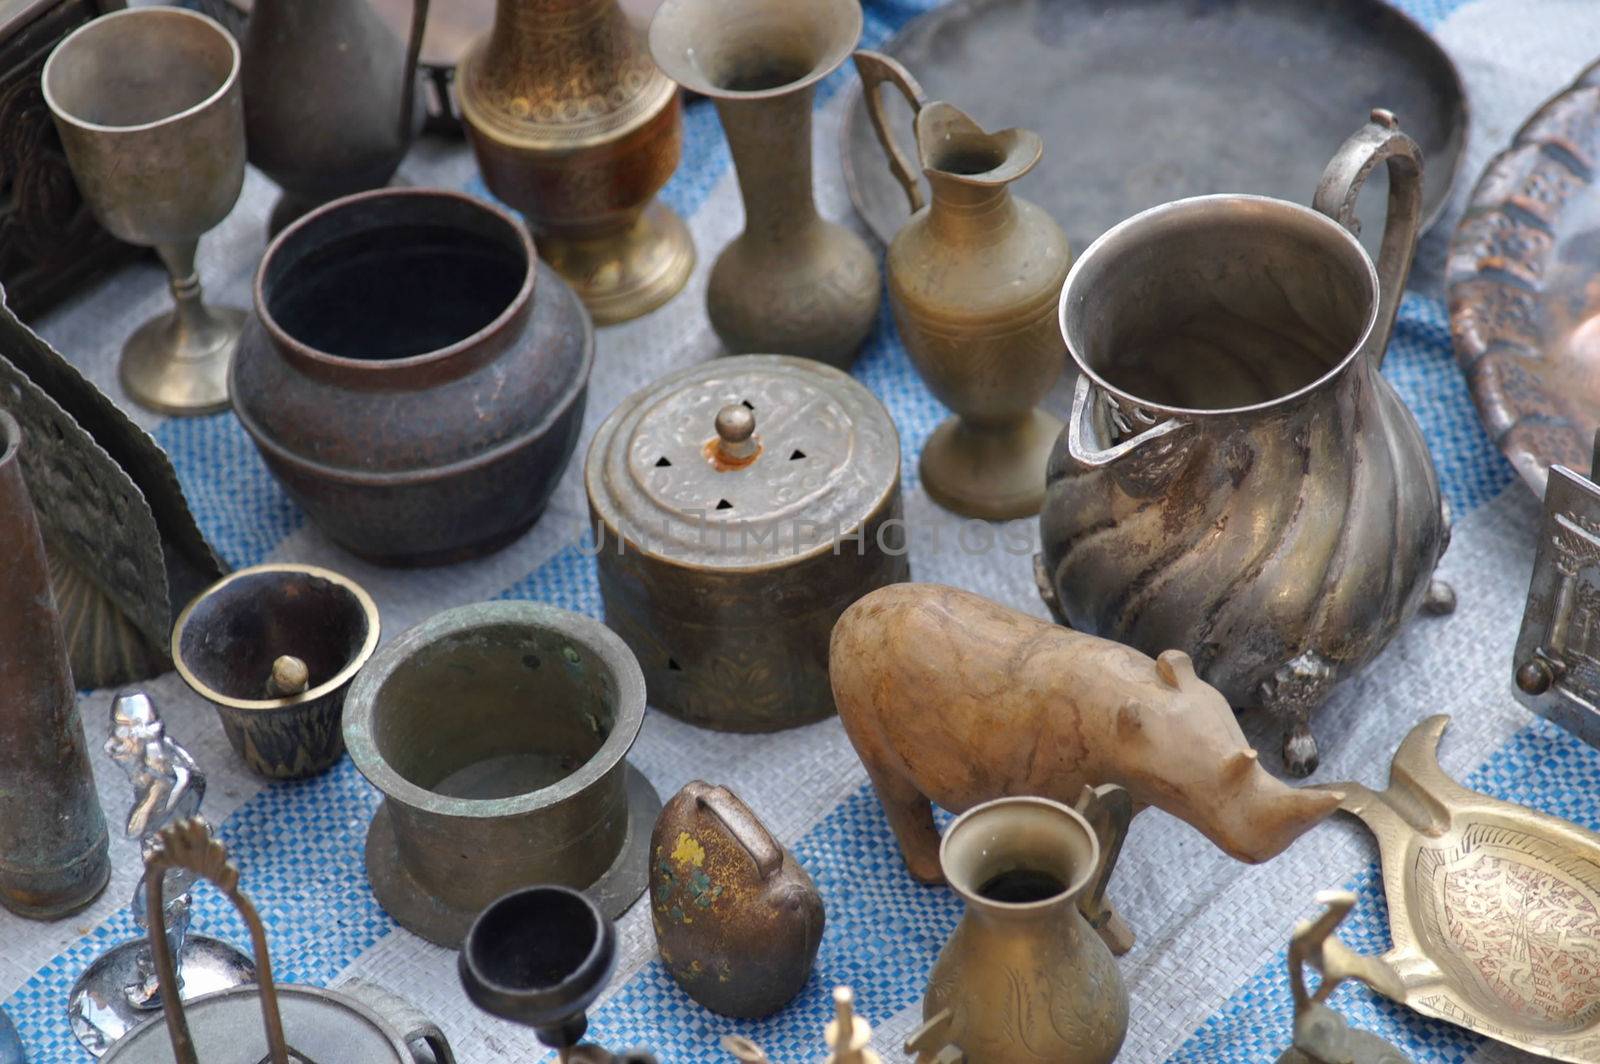 Antiques in jerusalem east market by javax